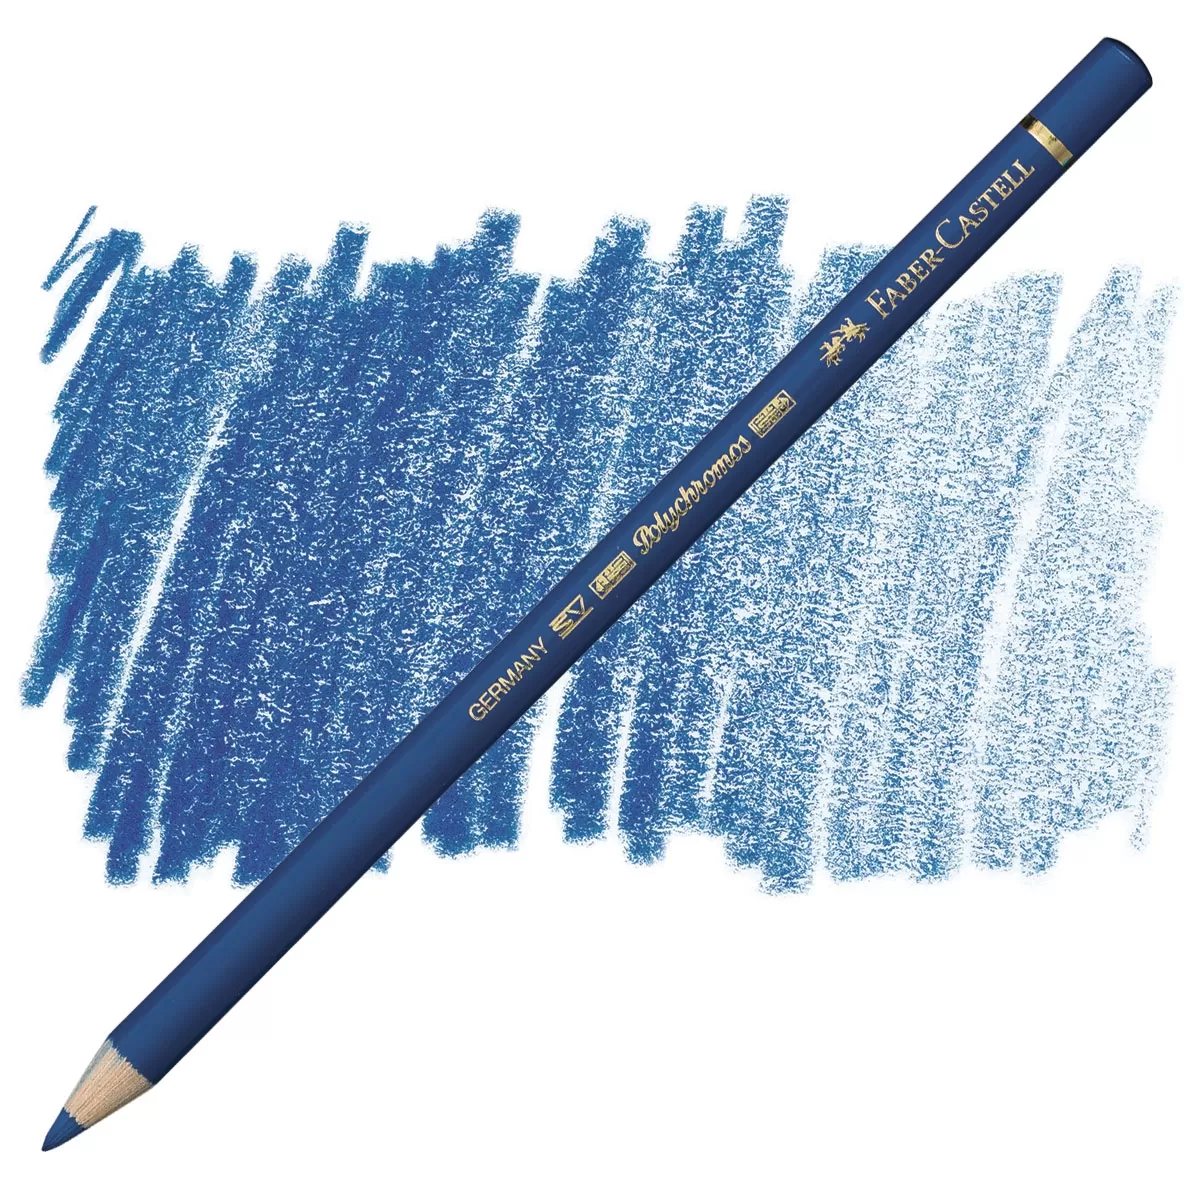 مداد رنگی پلی کروم فابر کاستل رنگ Bluish Turquoise - کد رنگی 149